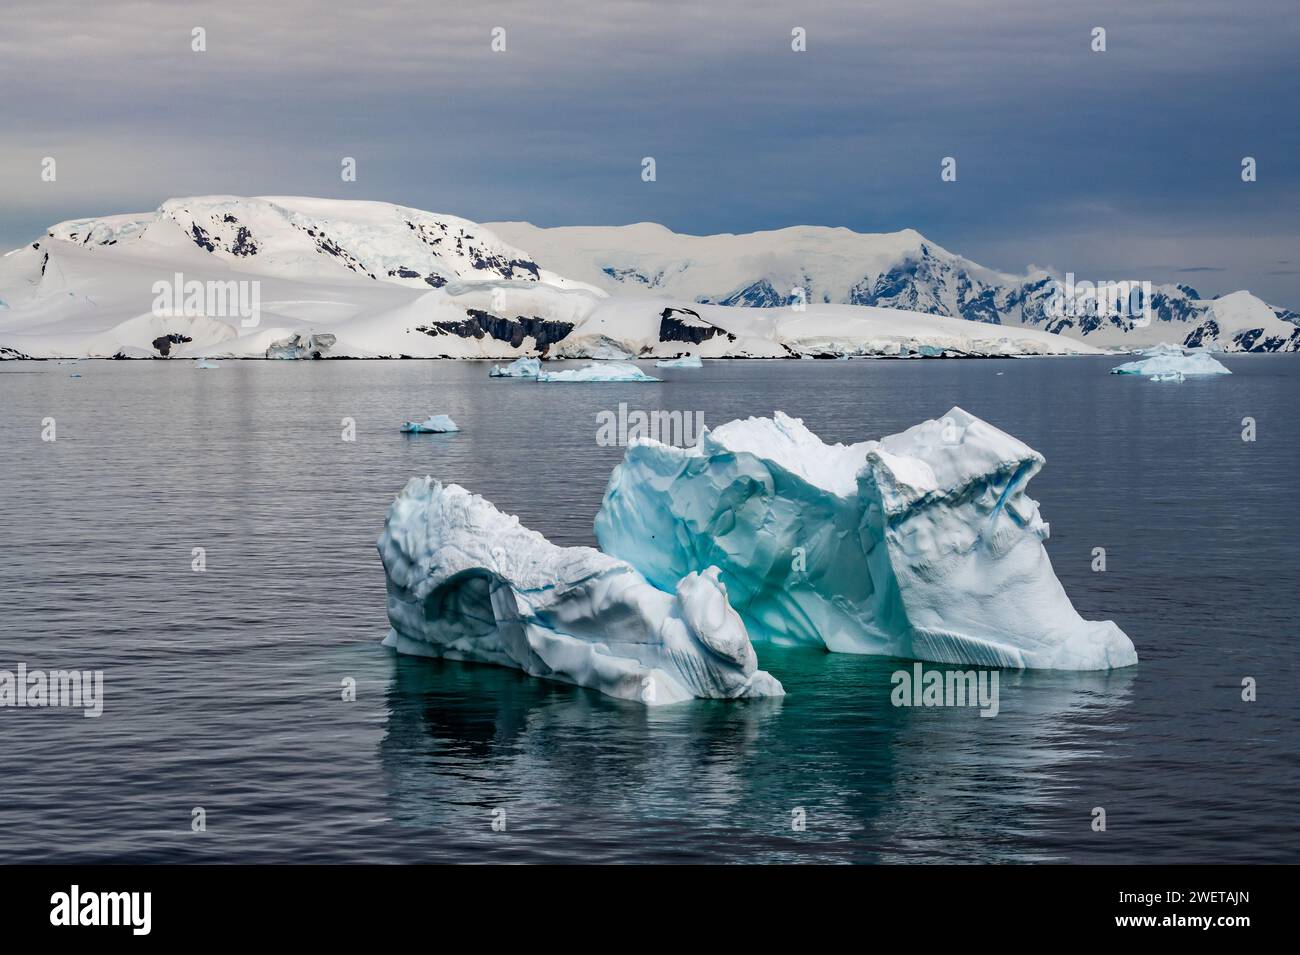 Iceberg dalle forme strane e dai colori vivaci che galleggiano nell'acqua vicino all'Antartide. Foto Stock